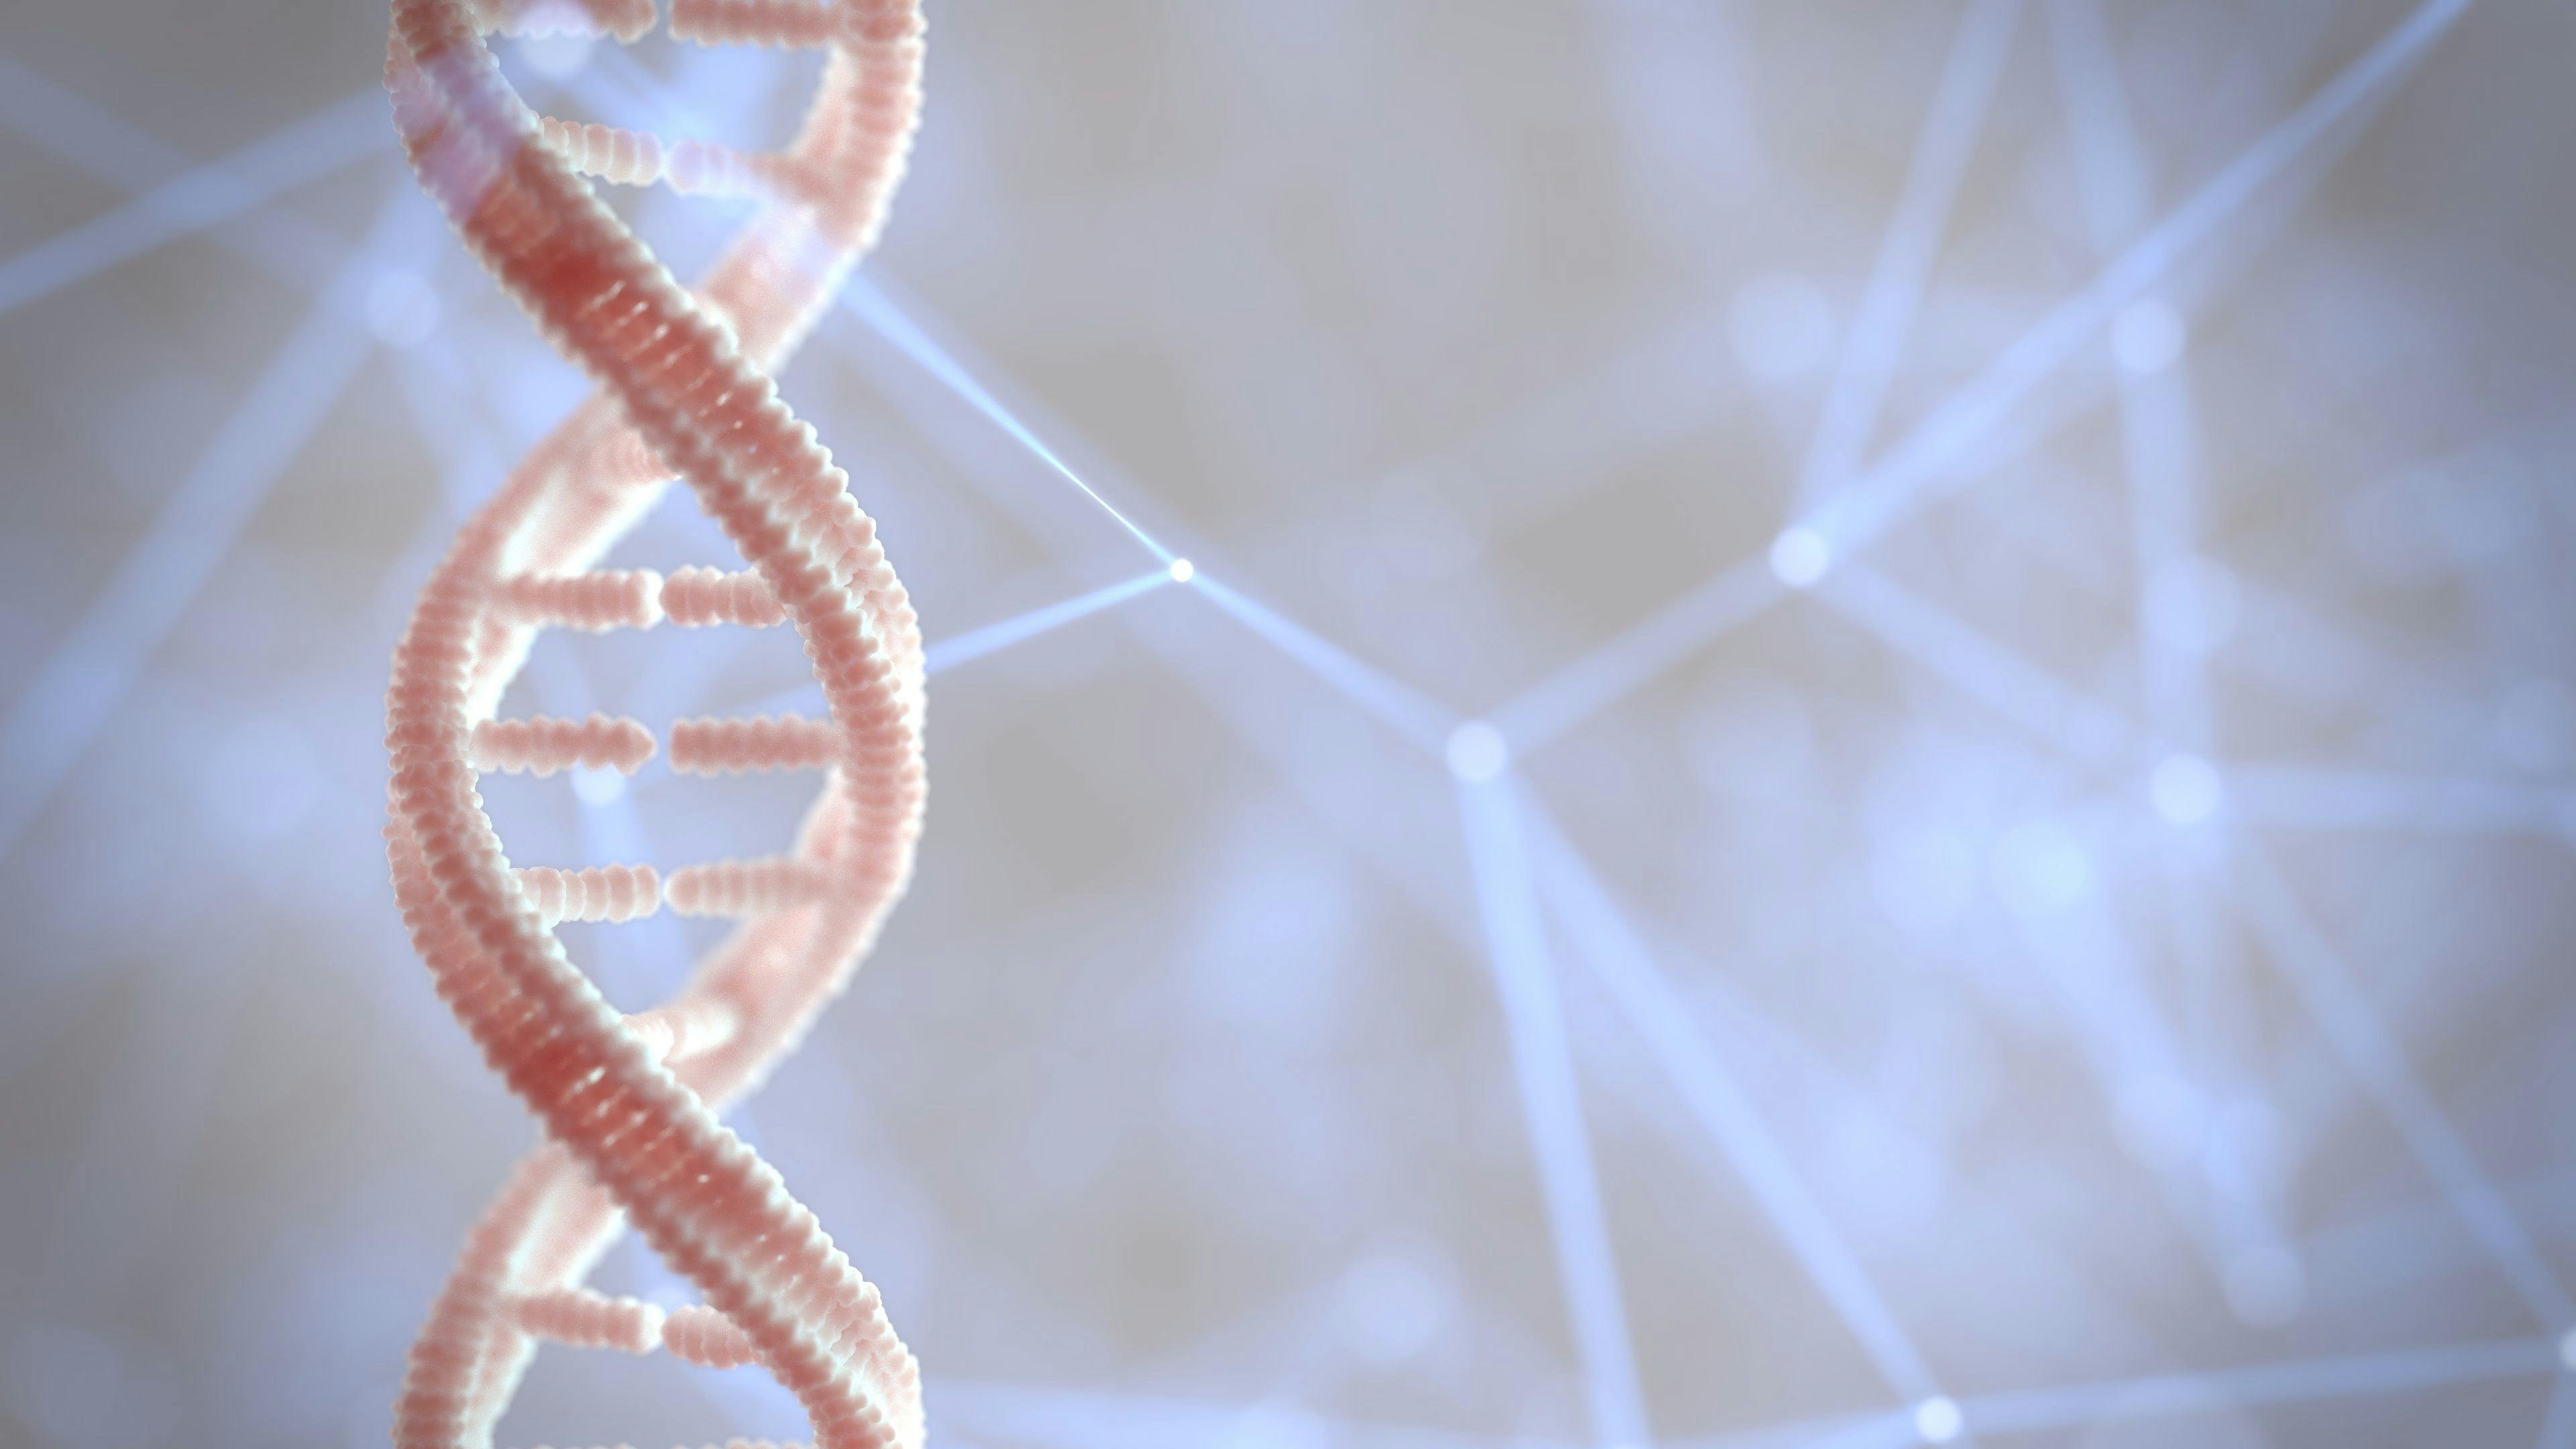 DNA genetic material | Image Credit: © PatinyaS. - stock.adobe.com